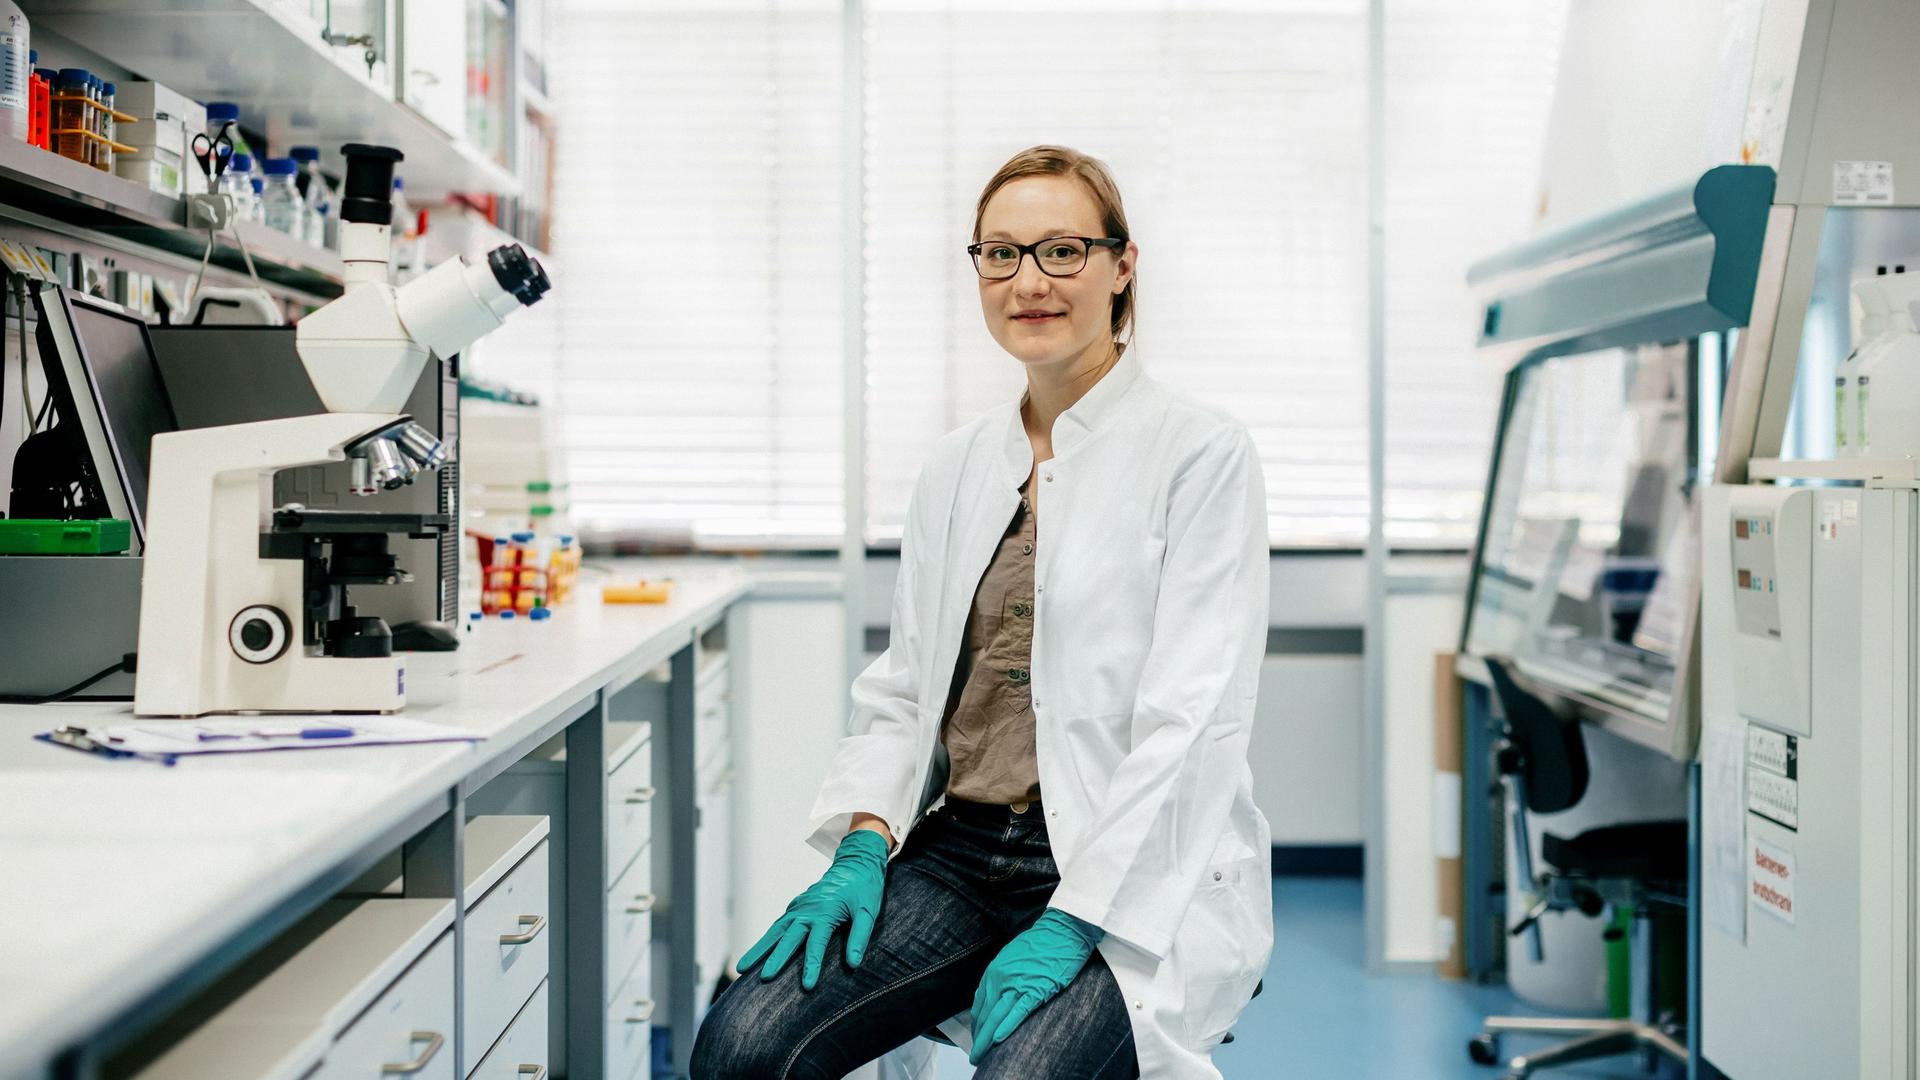 Porträt einer Wissenschaftlerin mit weißem Kittel und Handschuhen auf einem Hocker im modernen Labor. Sie schaut mit einem leichten Lächeln in die Kamera.